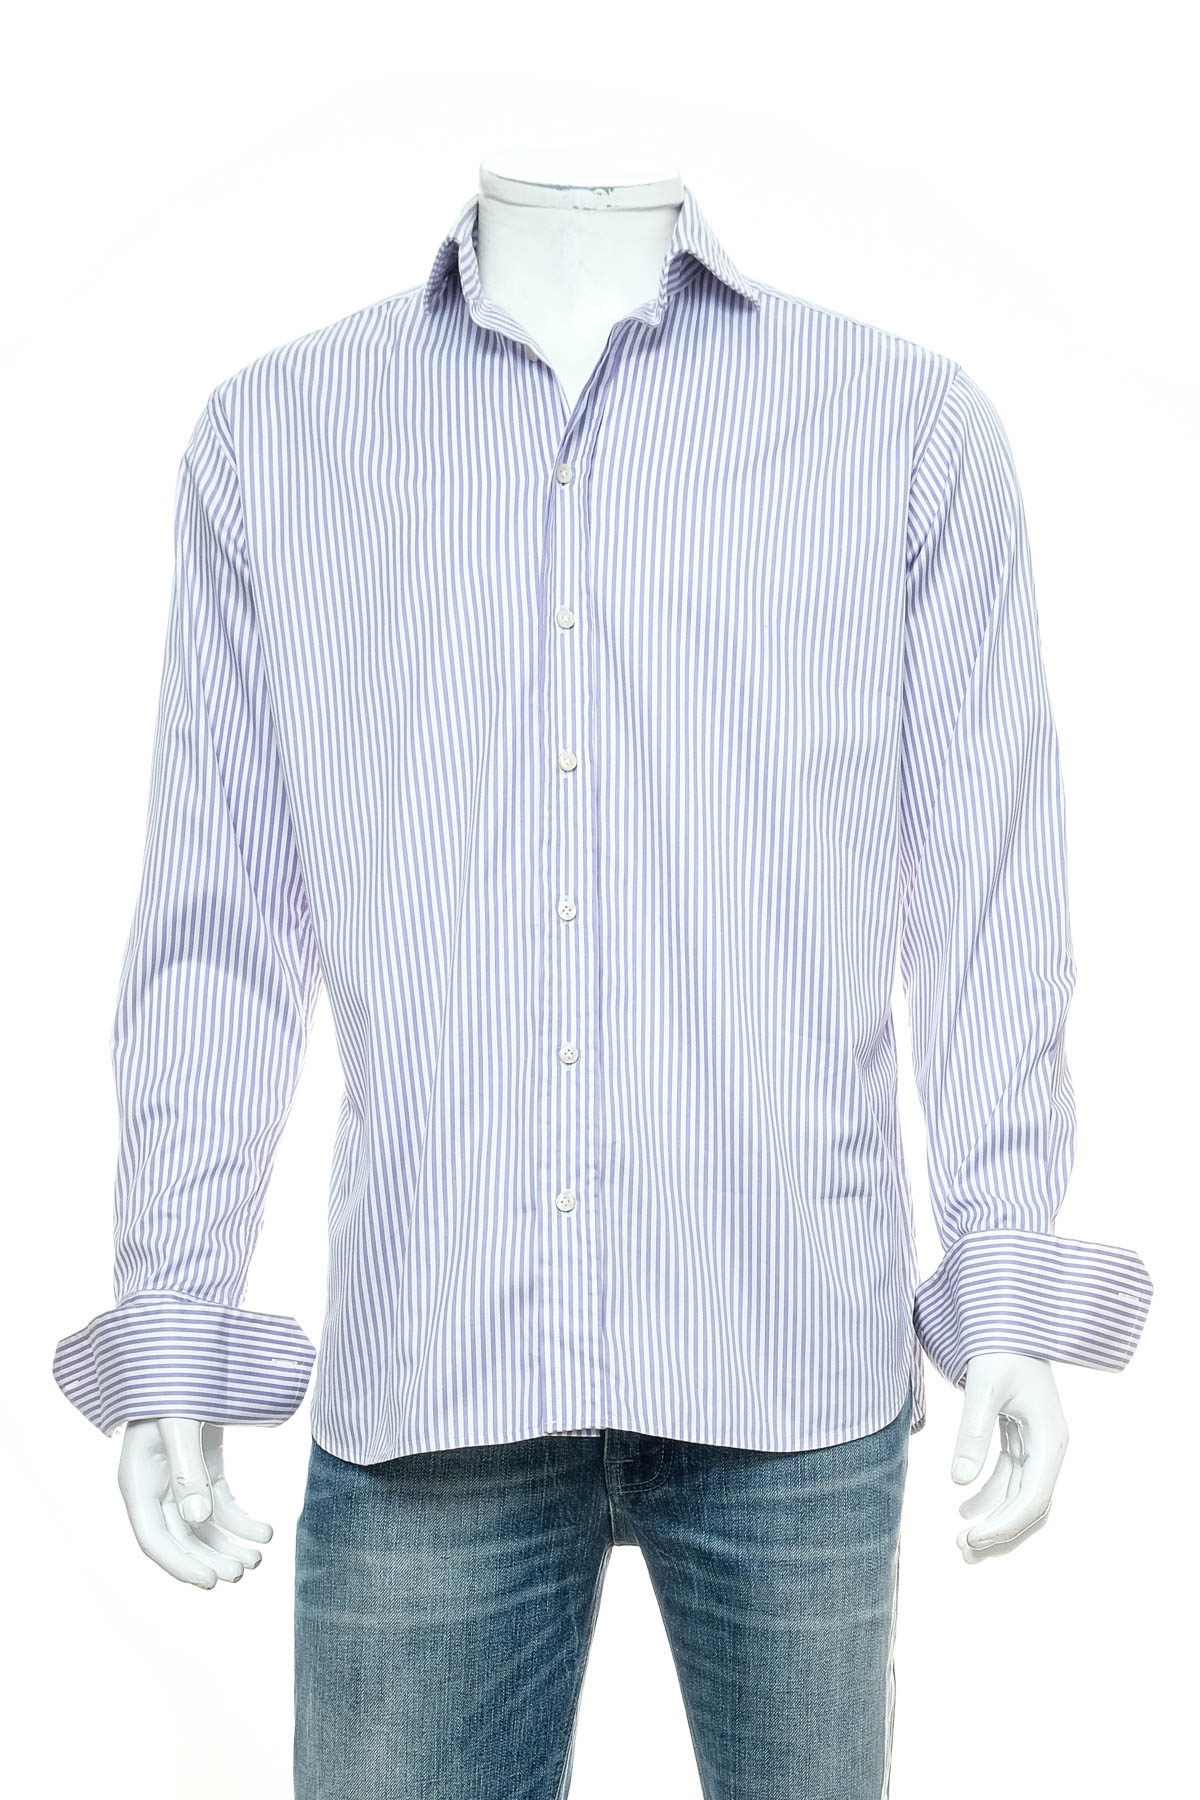 Ανδρικό πουκάμισο - PAUL ROSEN - 0